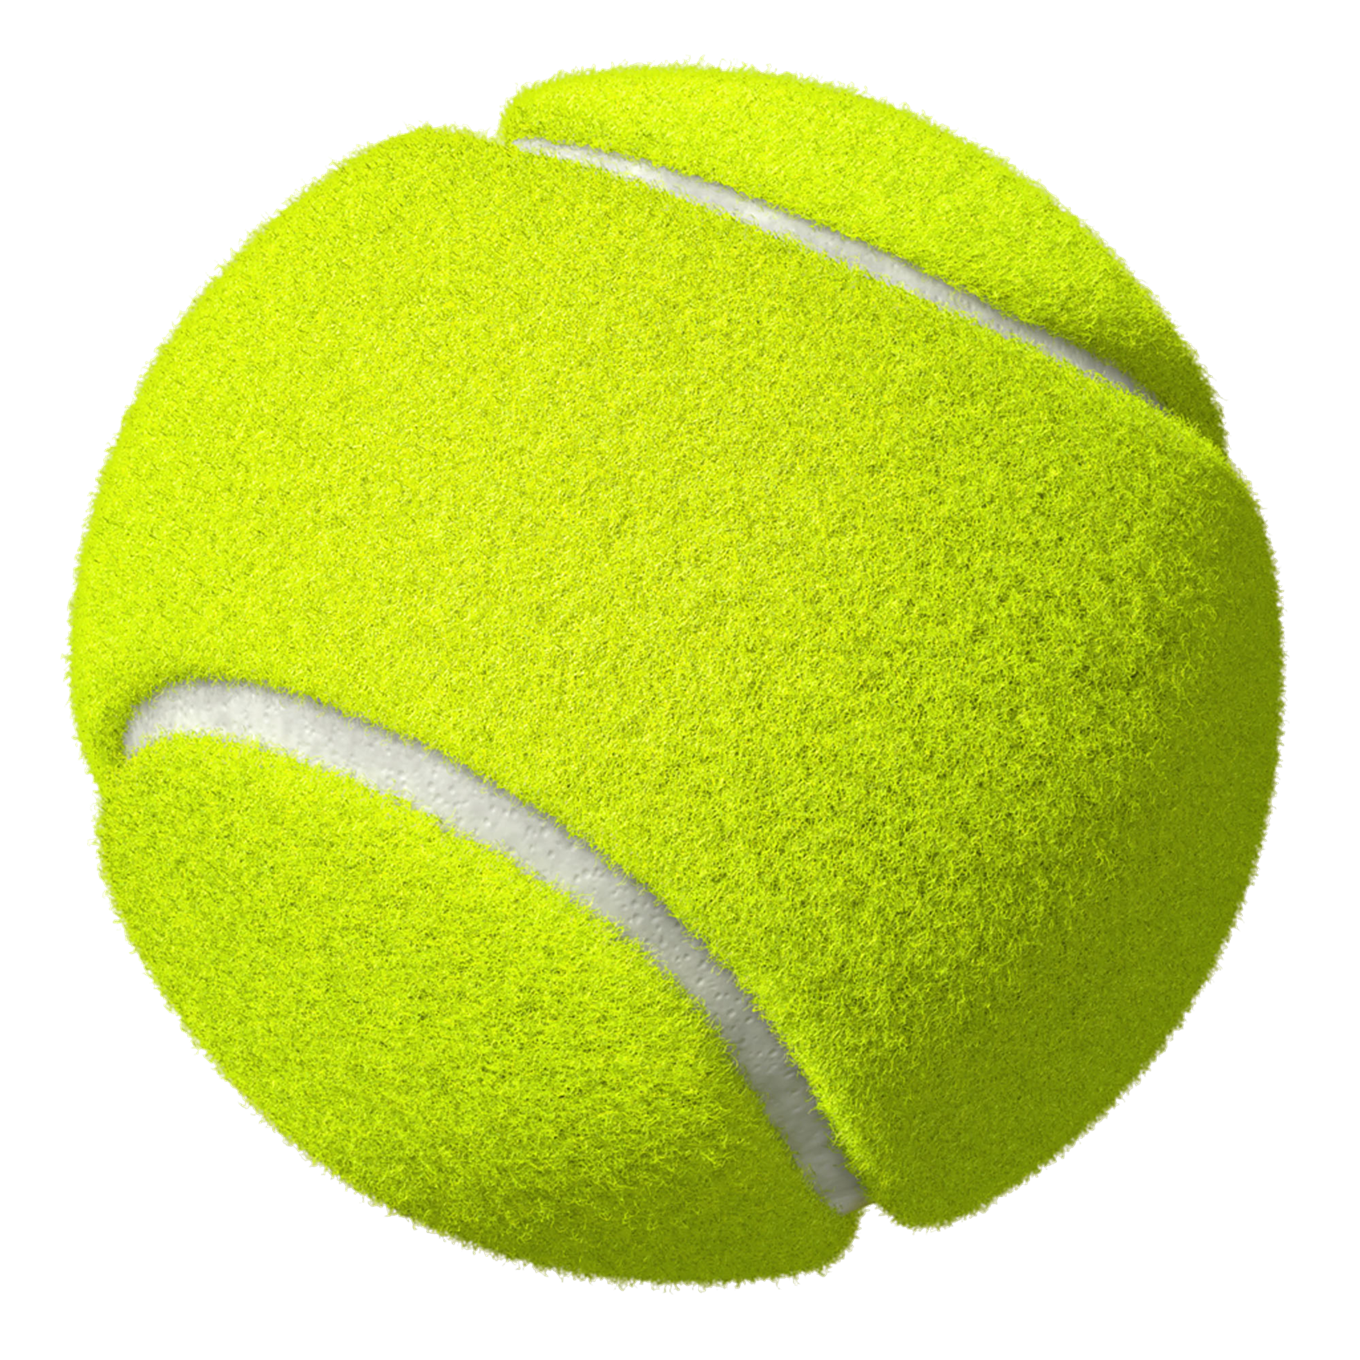 Immagine Trasparente della pallina da tennis